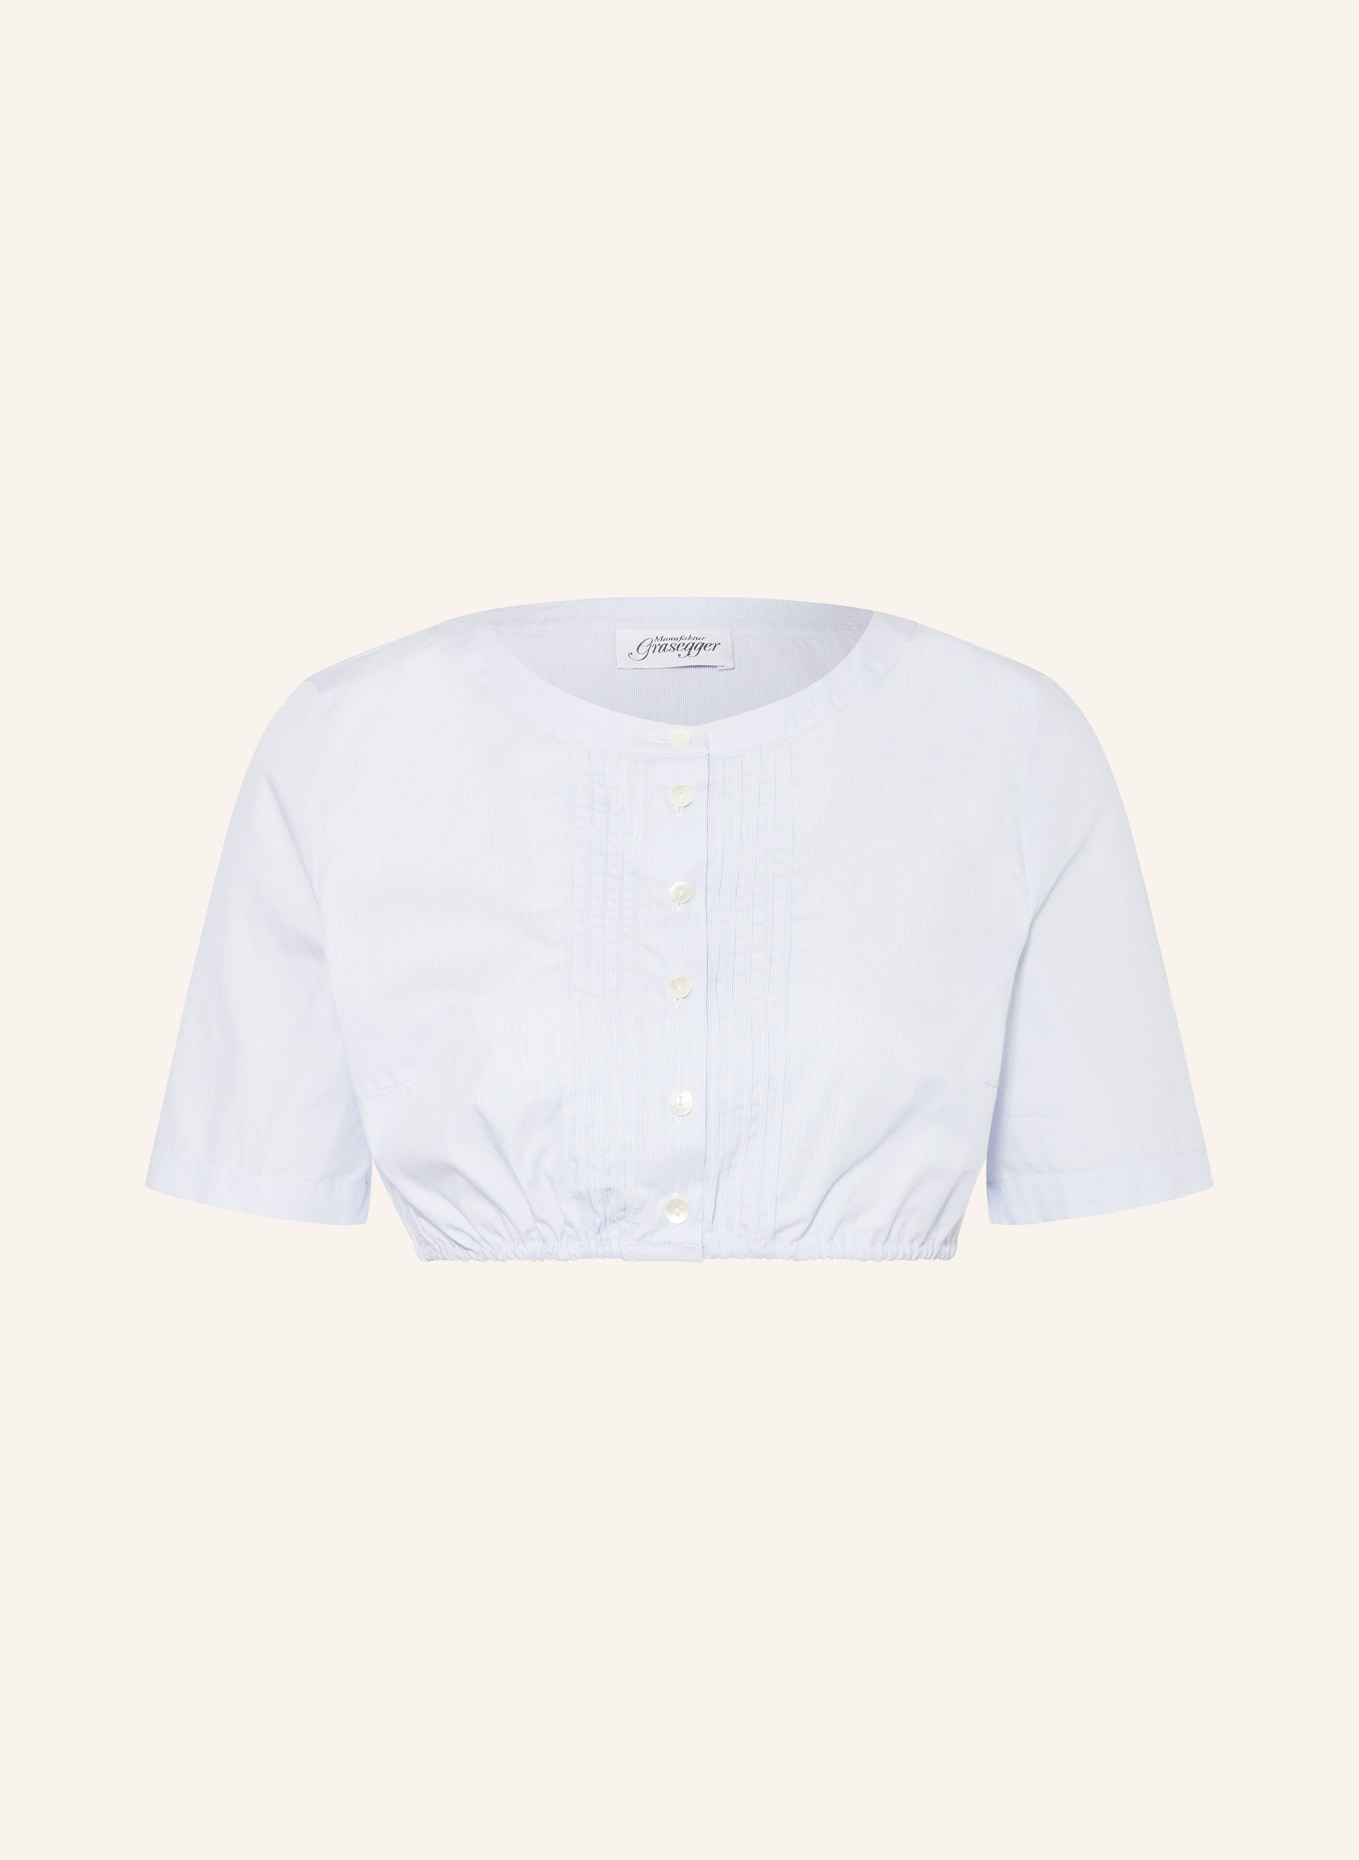 Grasegger Dirndl blouse ELKE, Color: LIGHT BLUE (Image 1)